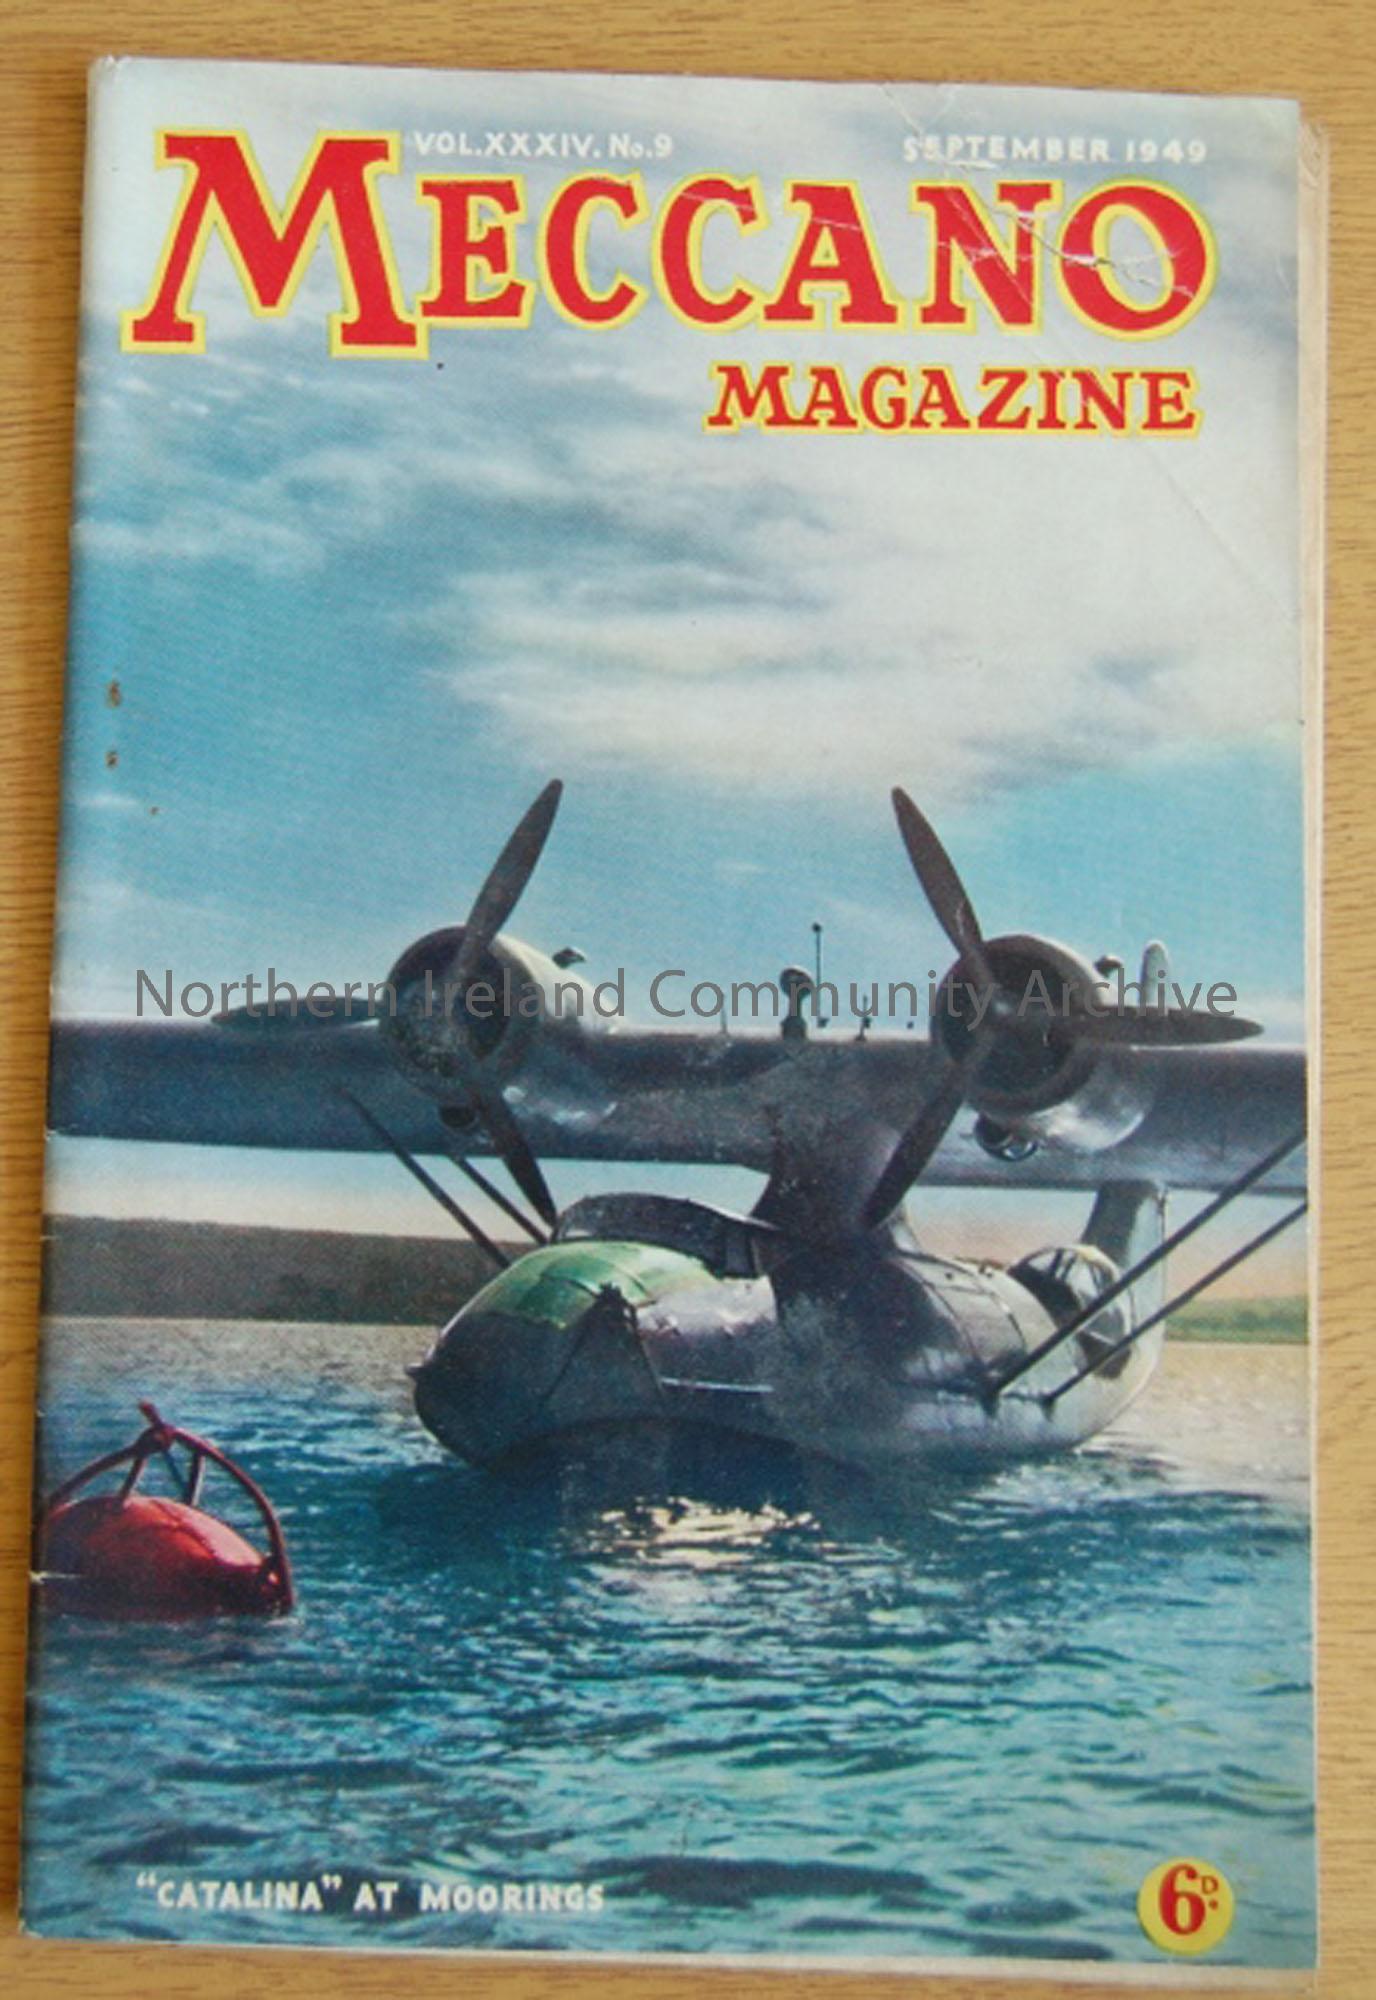 Meccano Magazine VOL.XXXIV. No.9, September 1949